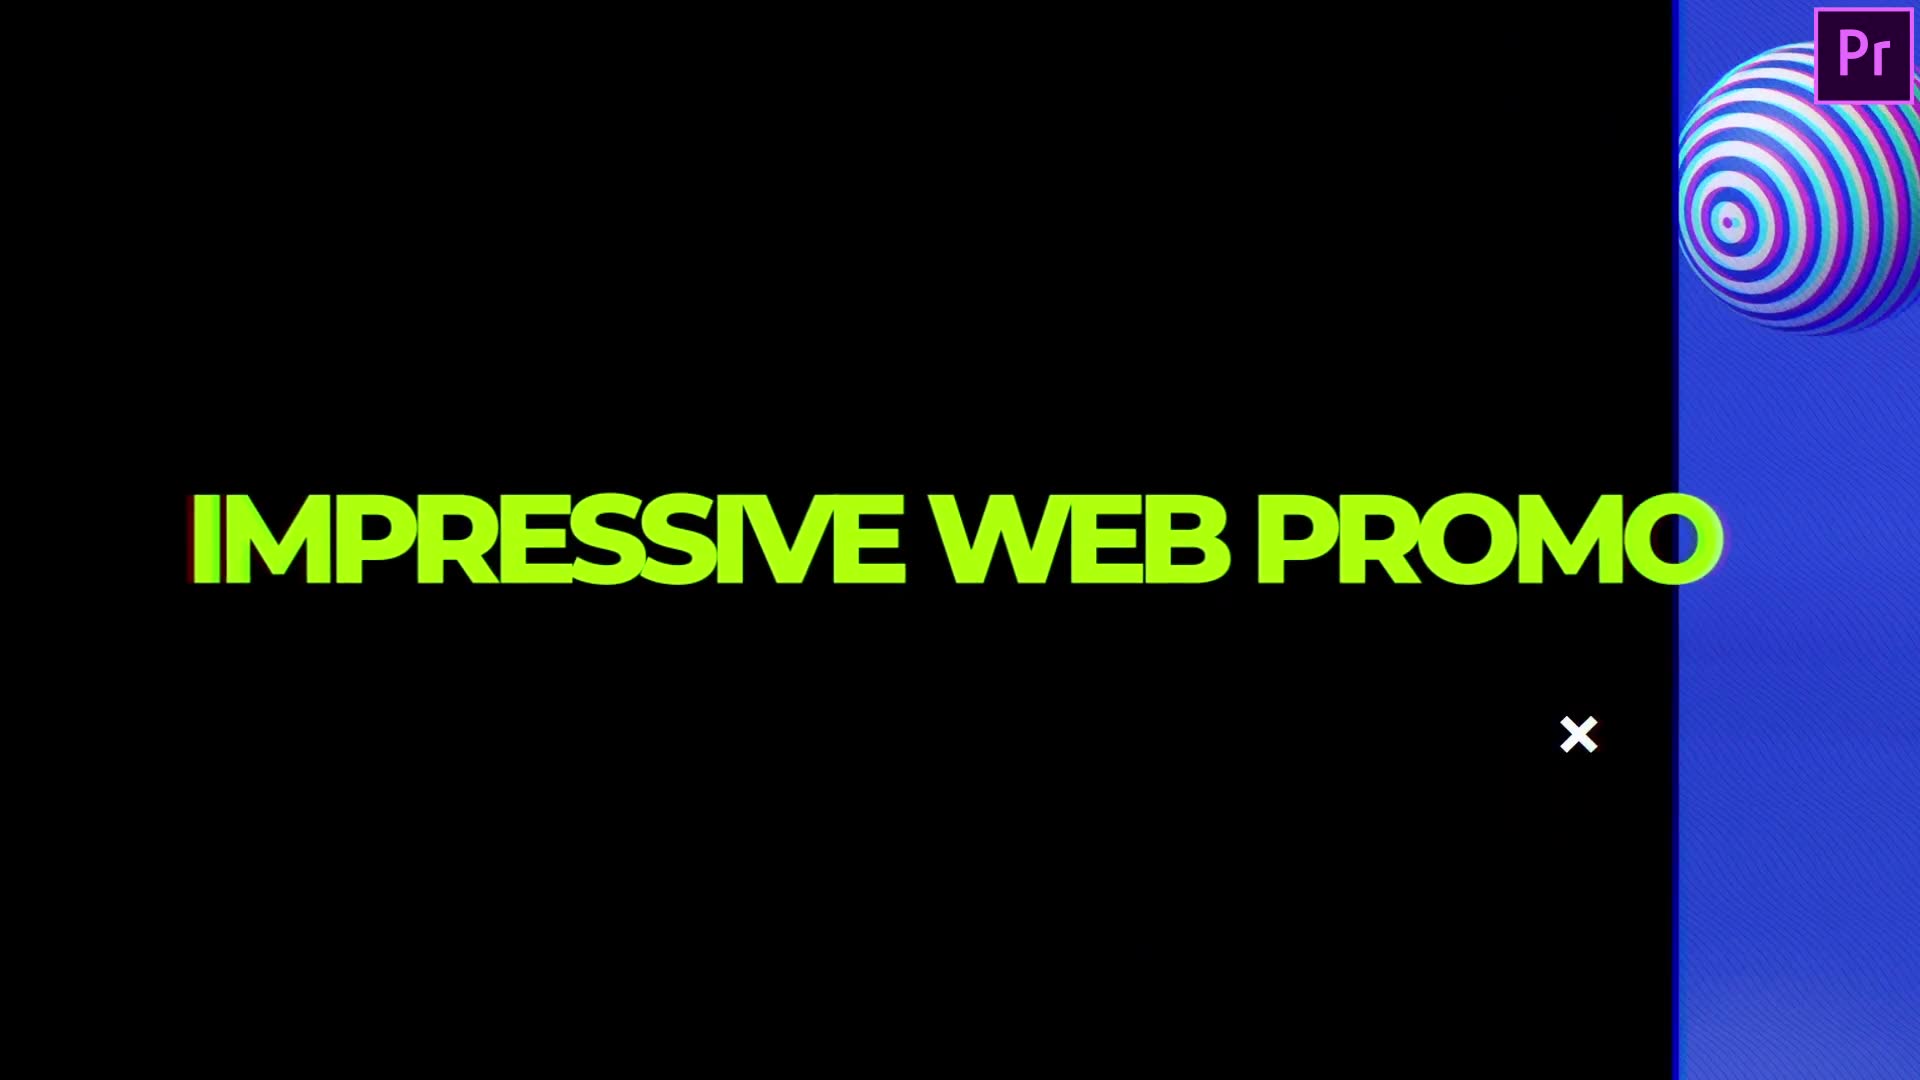 Impressive Website Promo Web Demo Video Premiere Pro Videohive 34227400 Premiere Pro Image 2